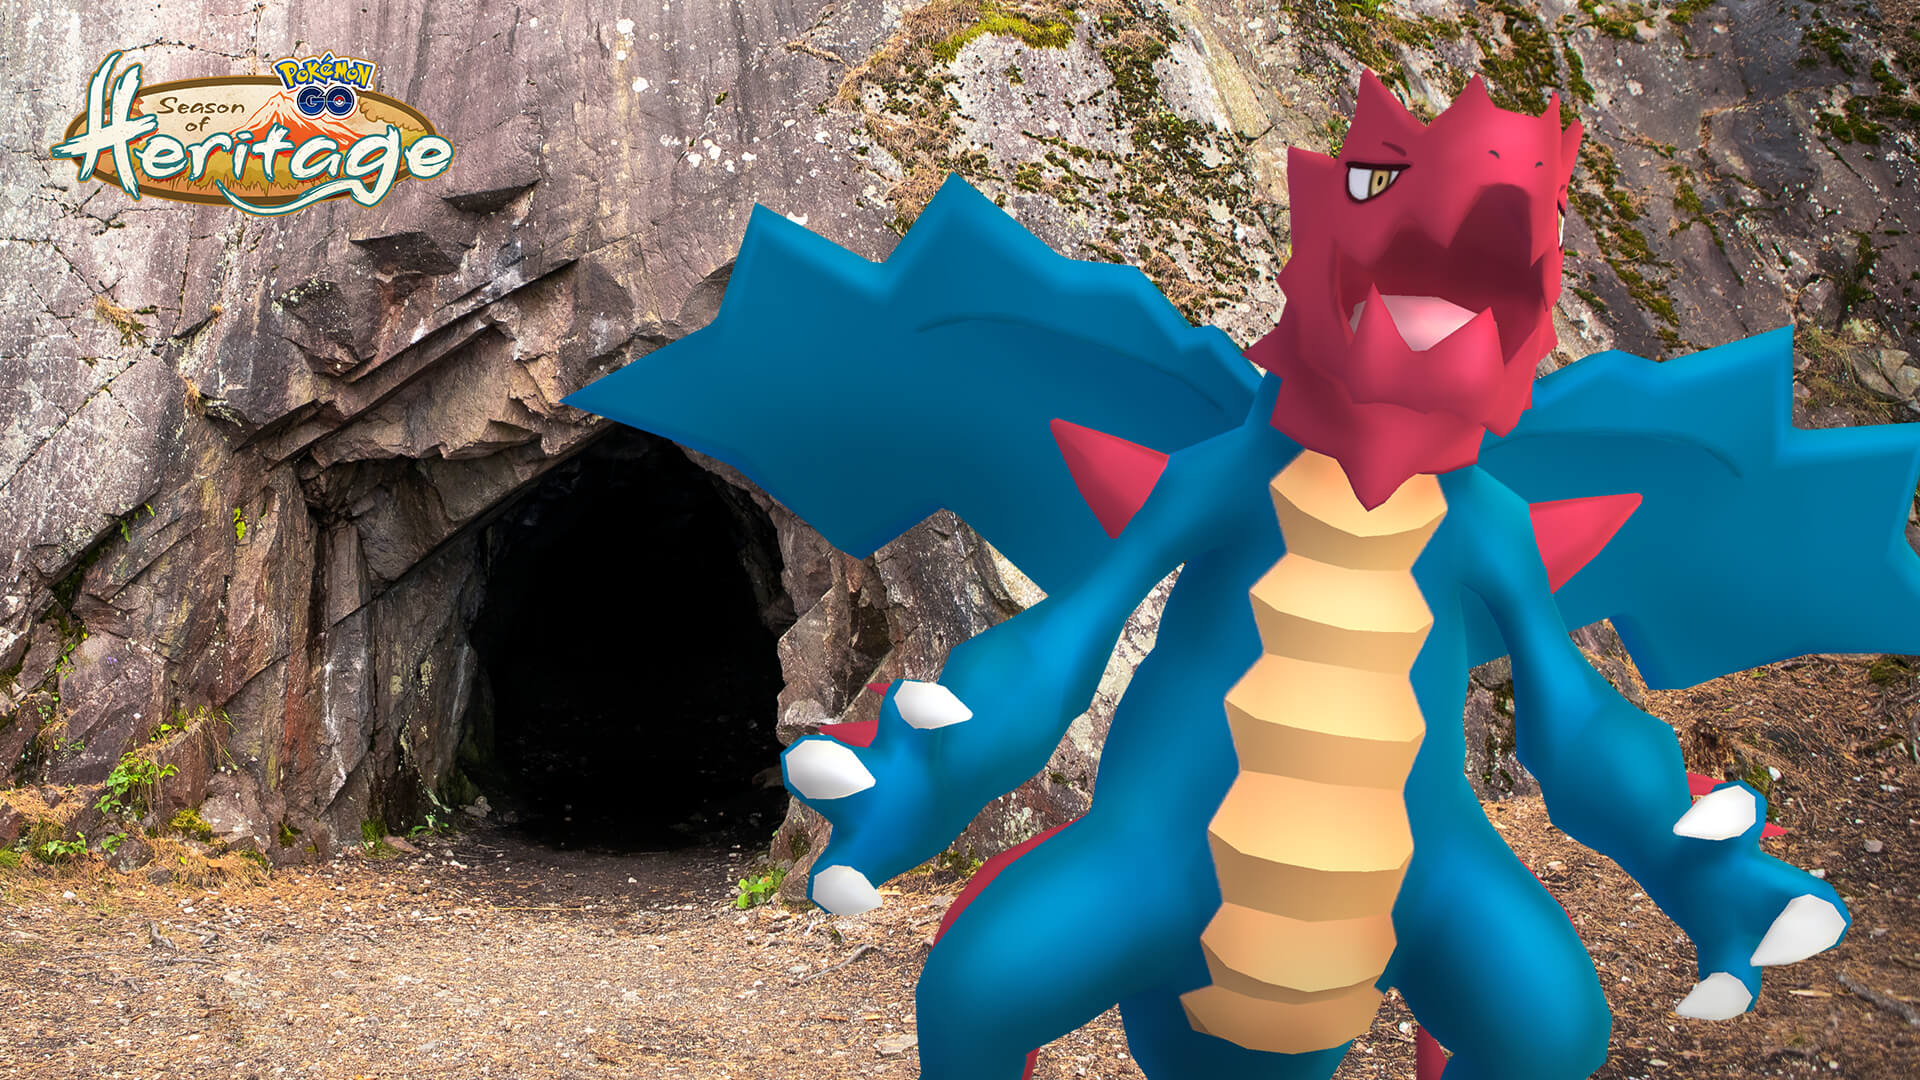 Druddigon llega a Pokémon GO como parte de la Temporada del Legado en el Descenso Duodraco